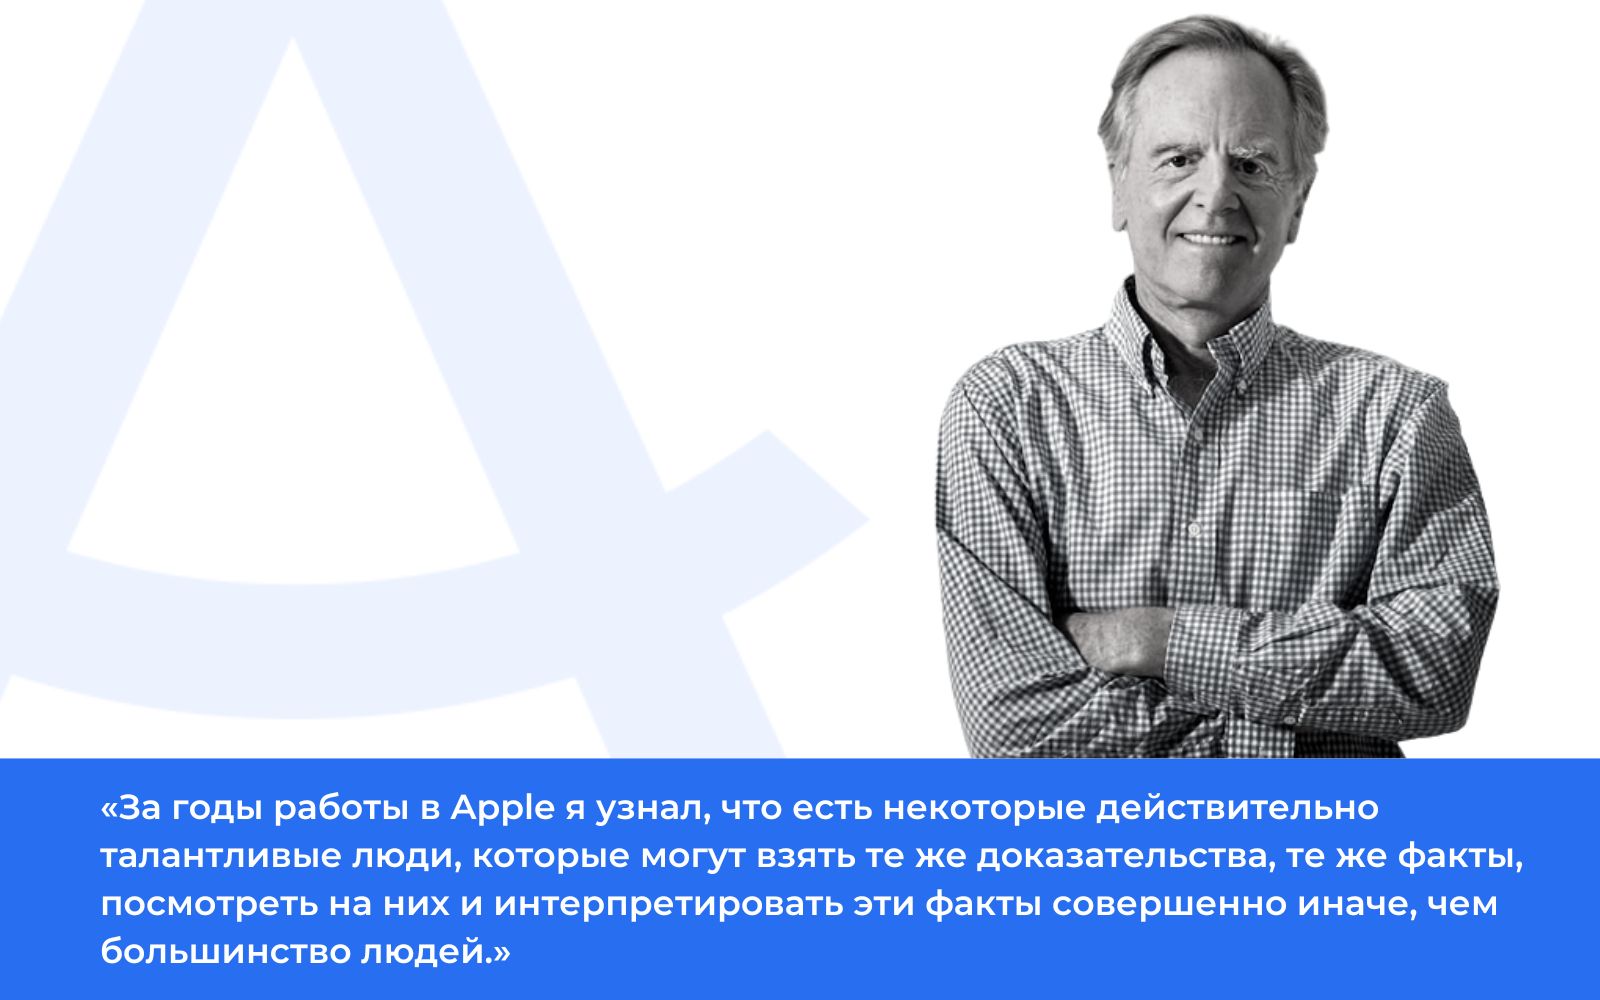 Цитата экс-топ-менеджера корпорации Apple Джона Скалли